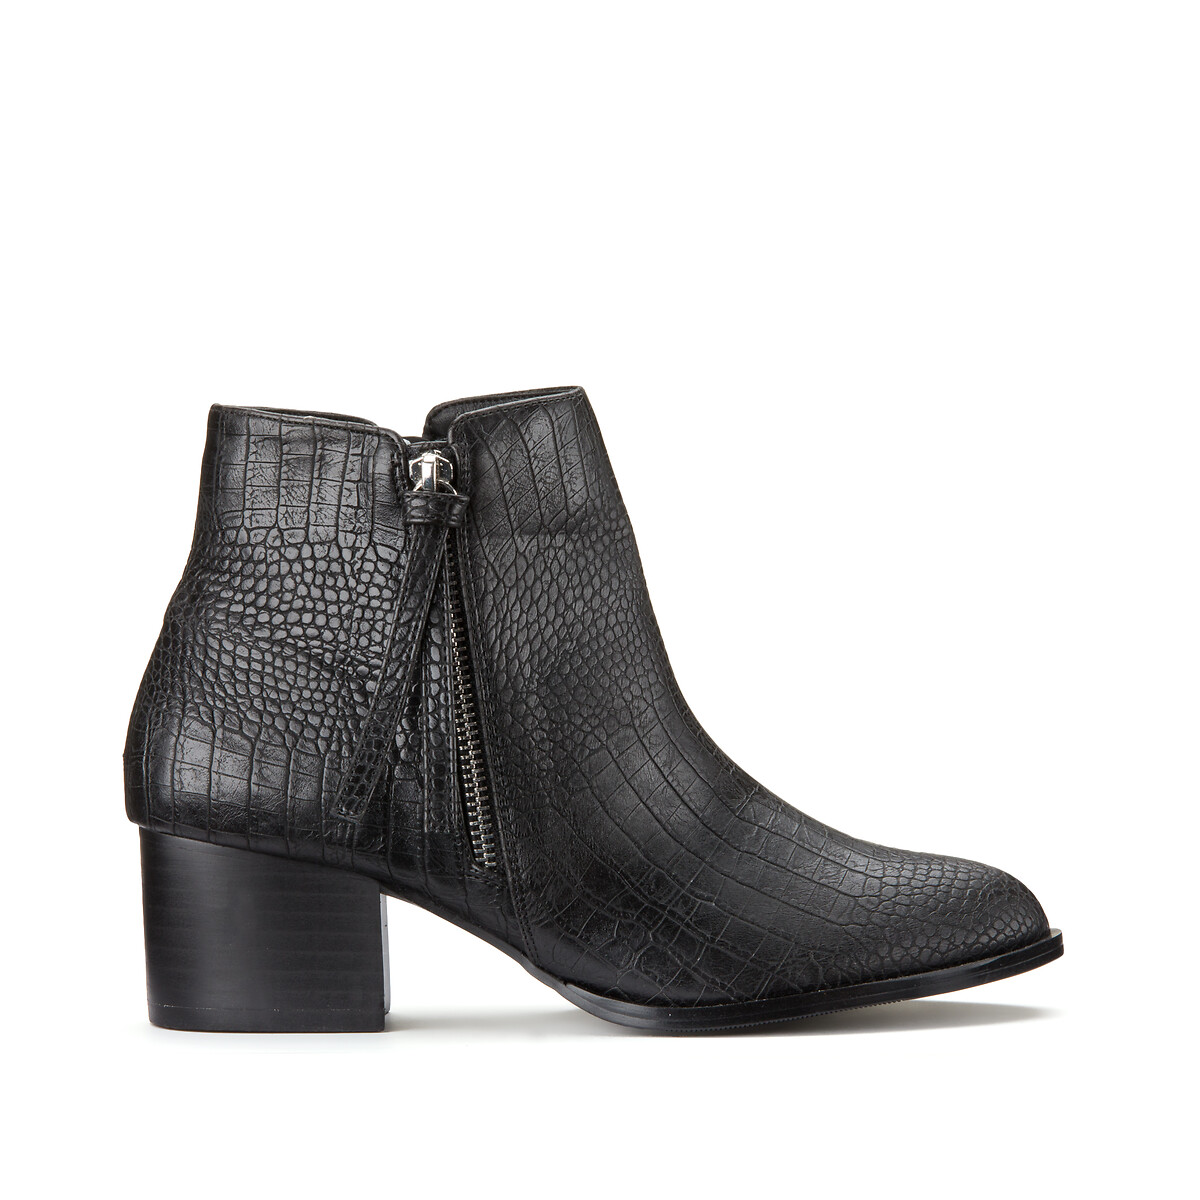 Boots zippées talon large 5 cm effet croco noir La Redoute Collections | La  Redoute